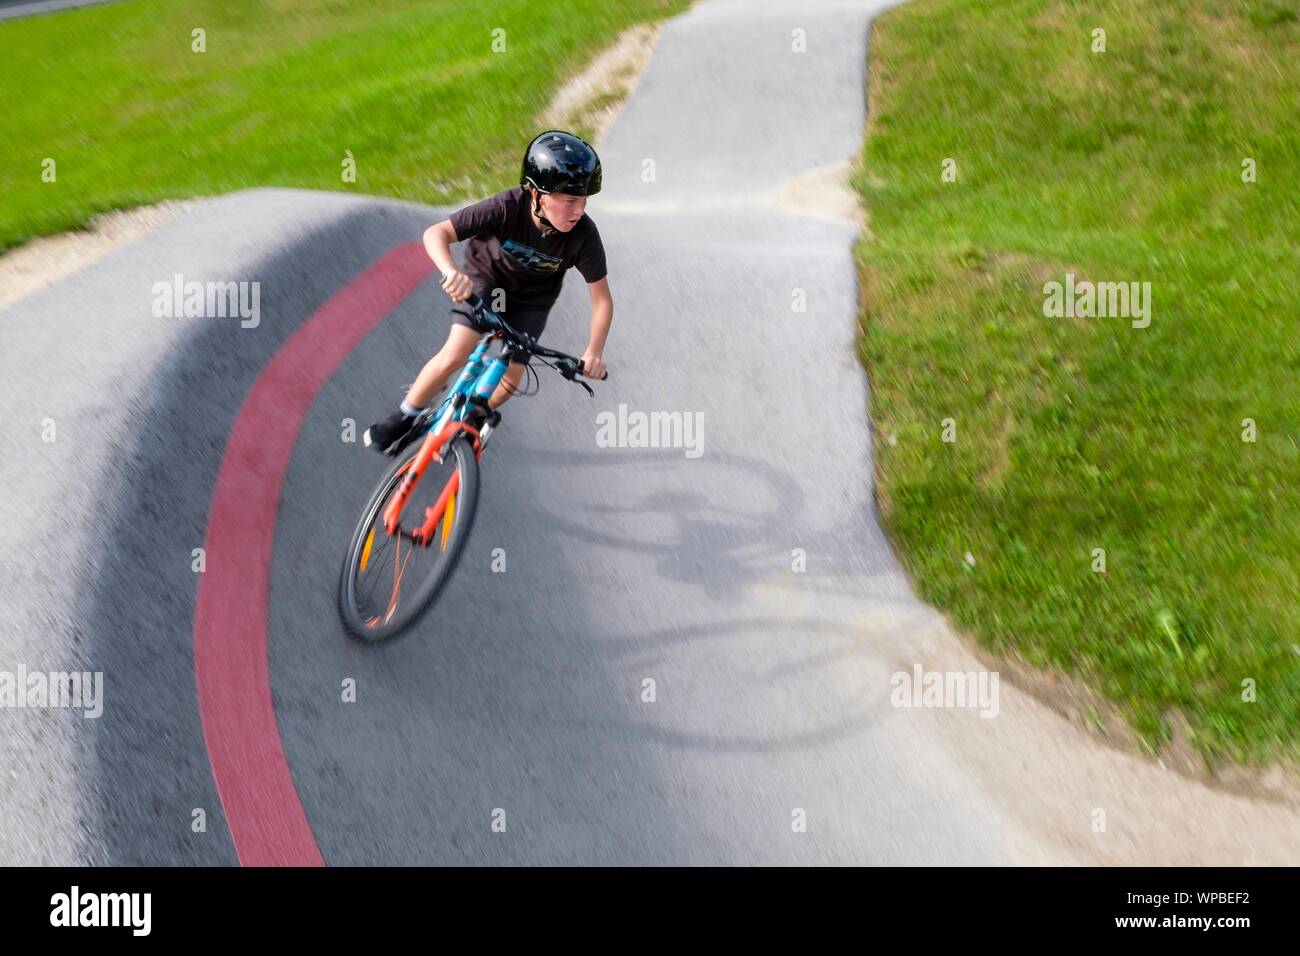 Enfant, garçon, 11 ans, école un vélo de montagne à travers une courbe raide dans une pompe piste, vélo de montagne, sentier Viehhausen, Salzbourg, Autriche Banque D'Images